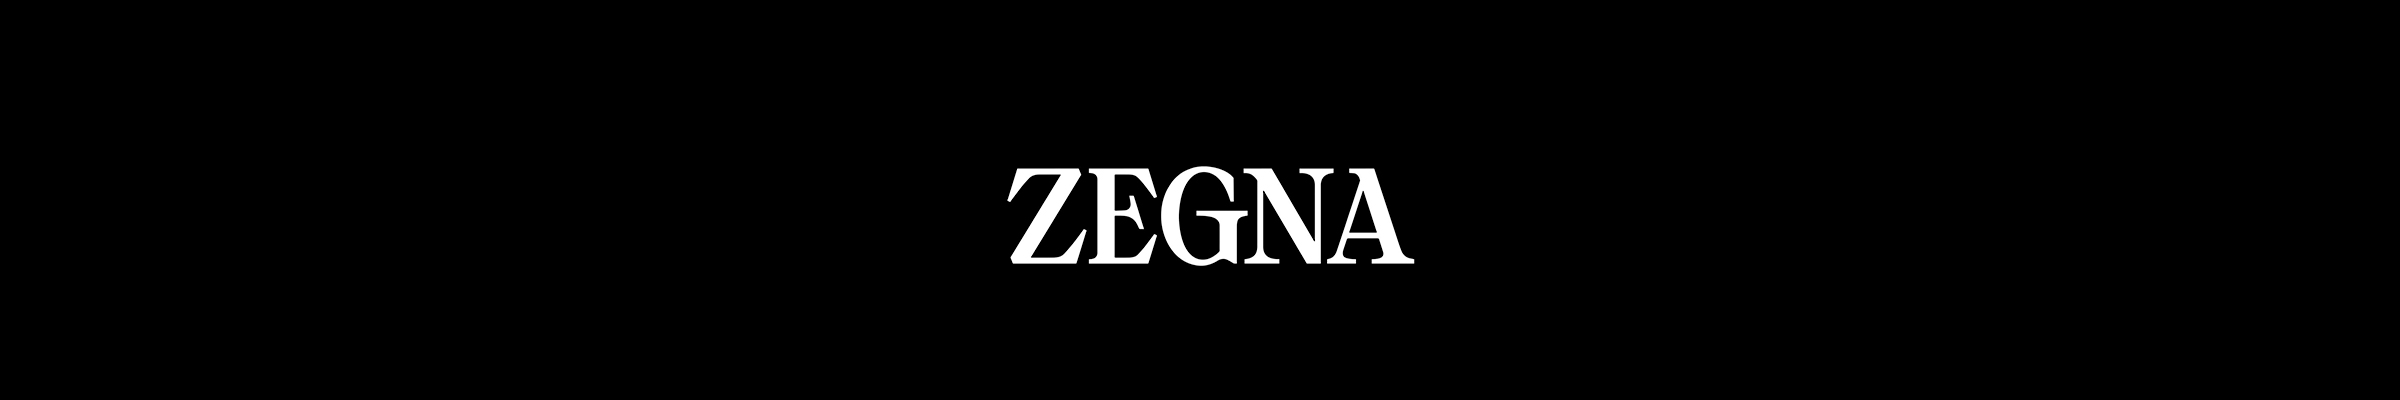 ermenegildo-zegna-banner